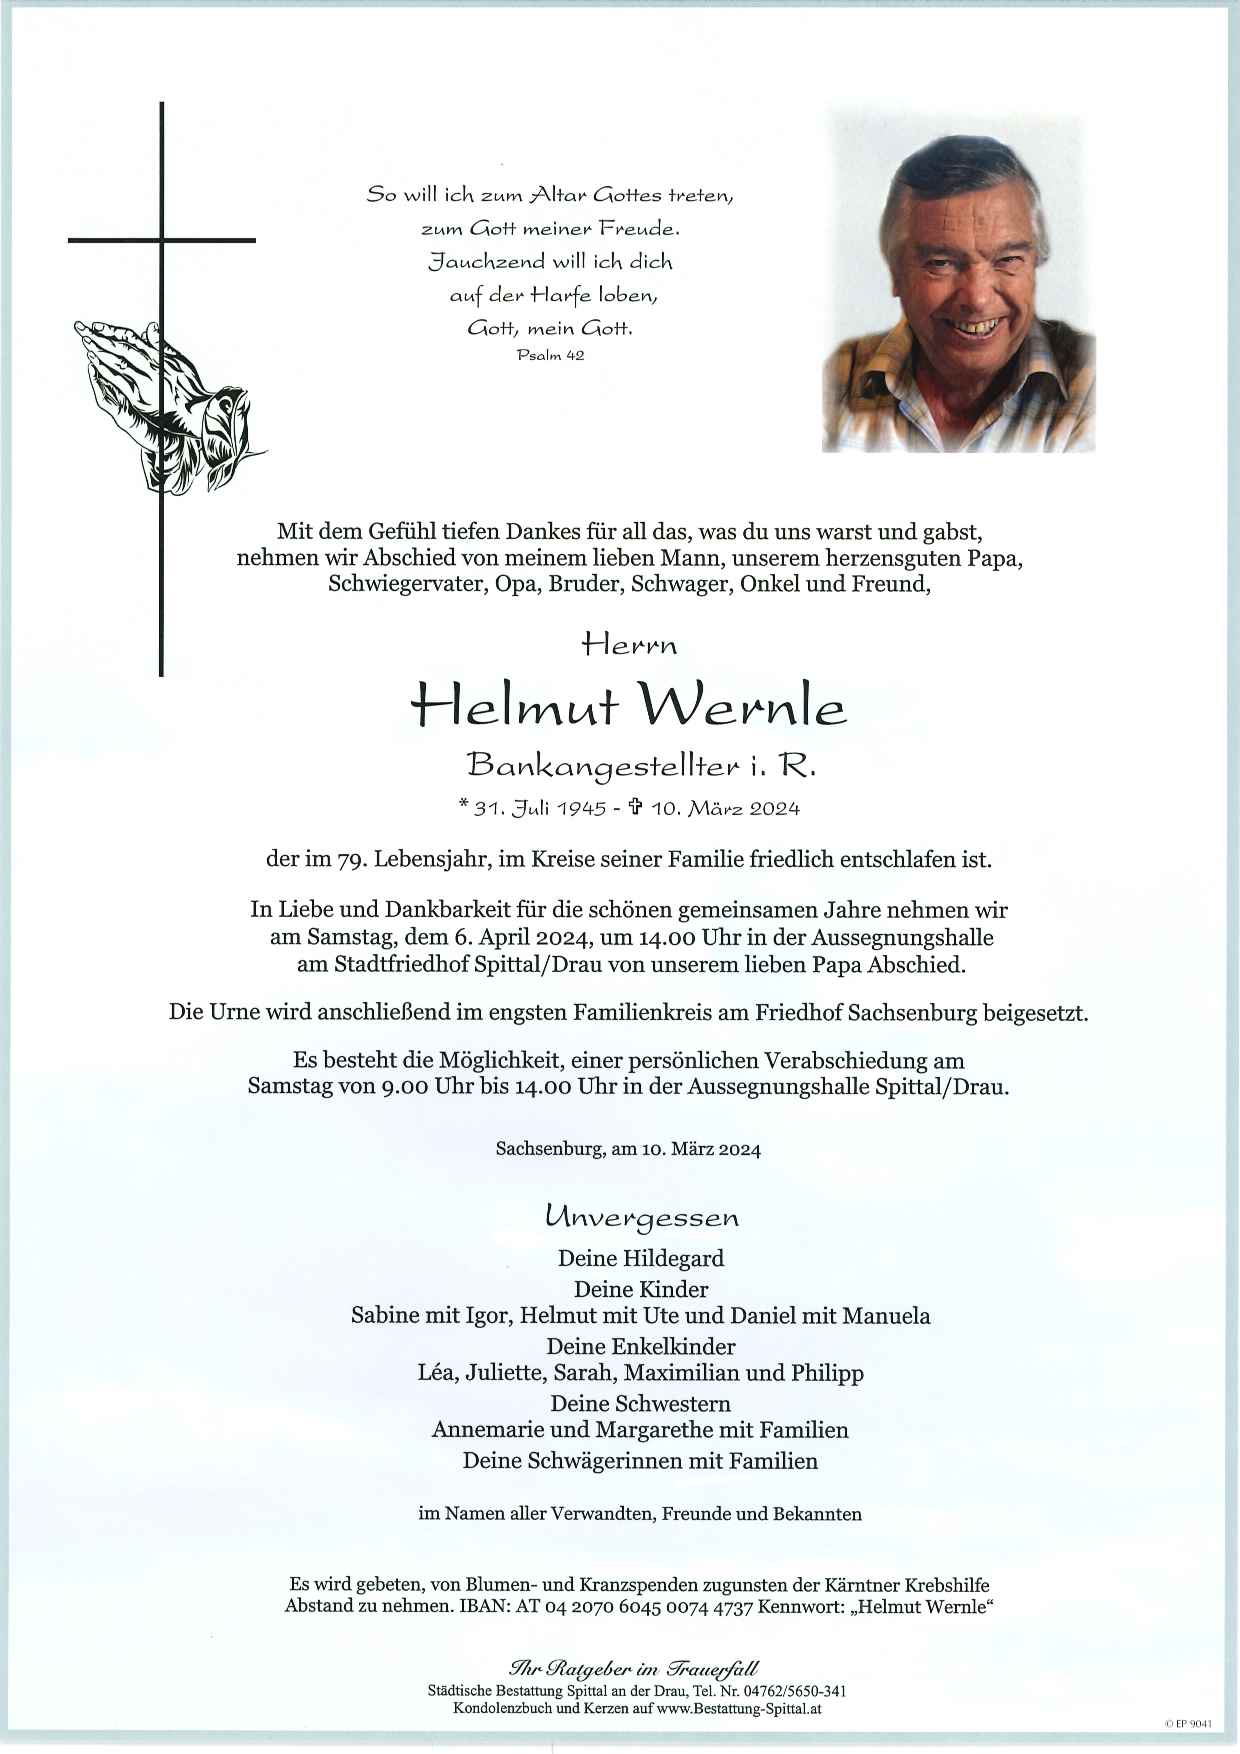 Helmut Wernle